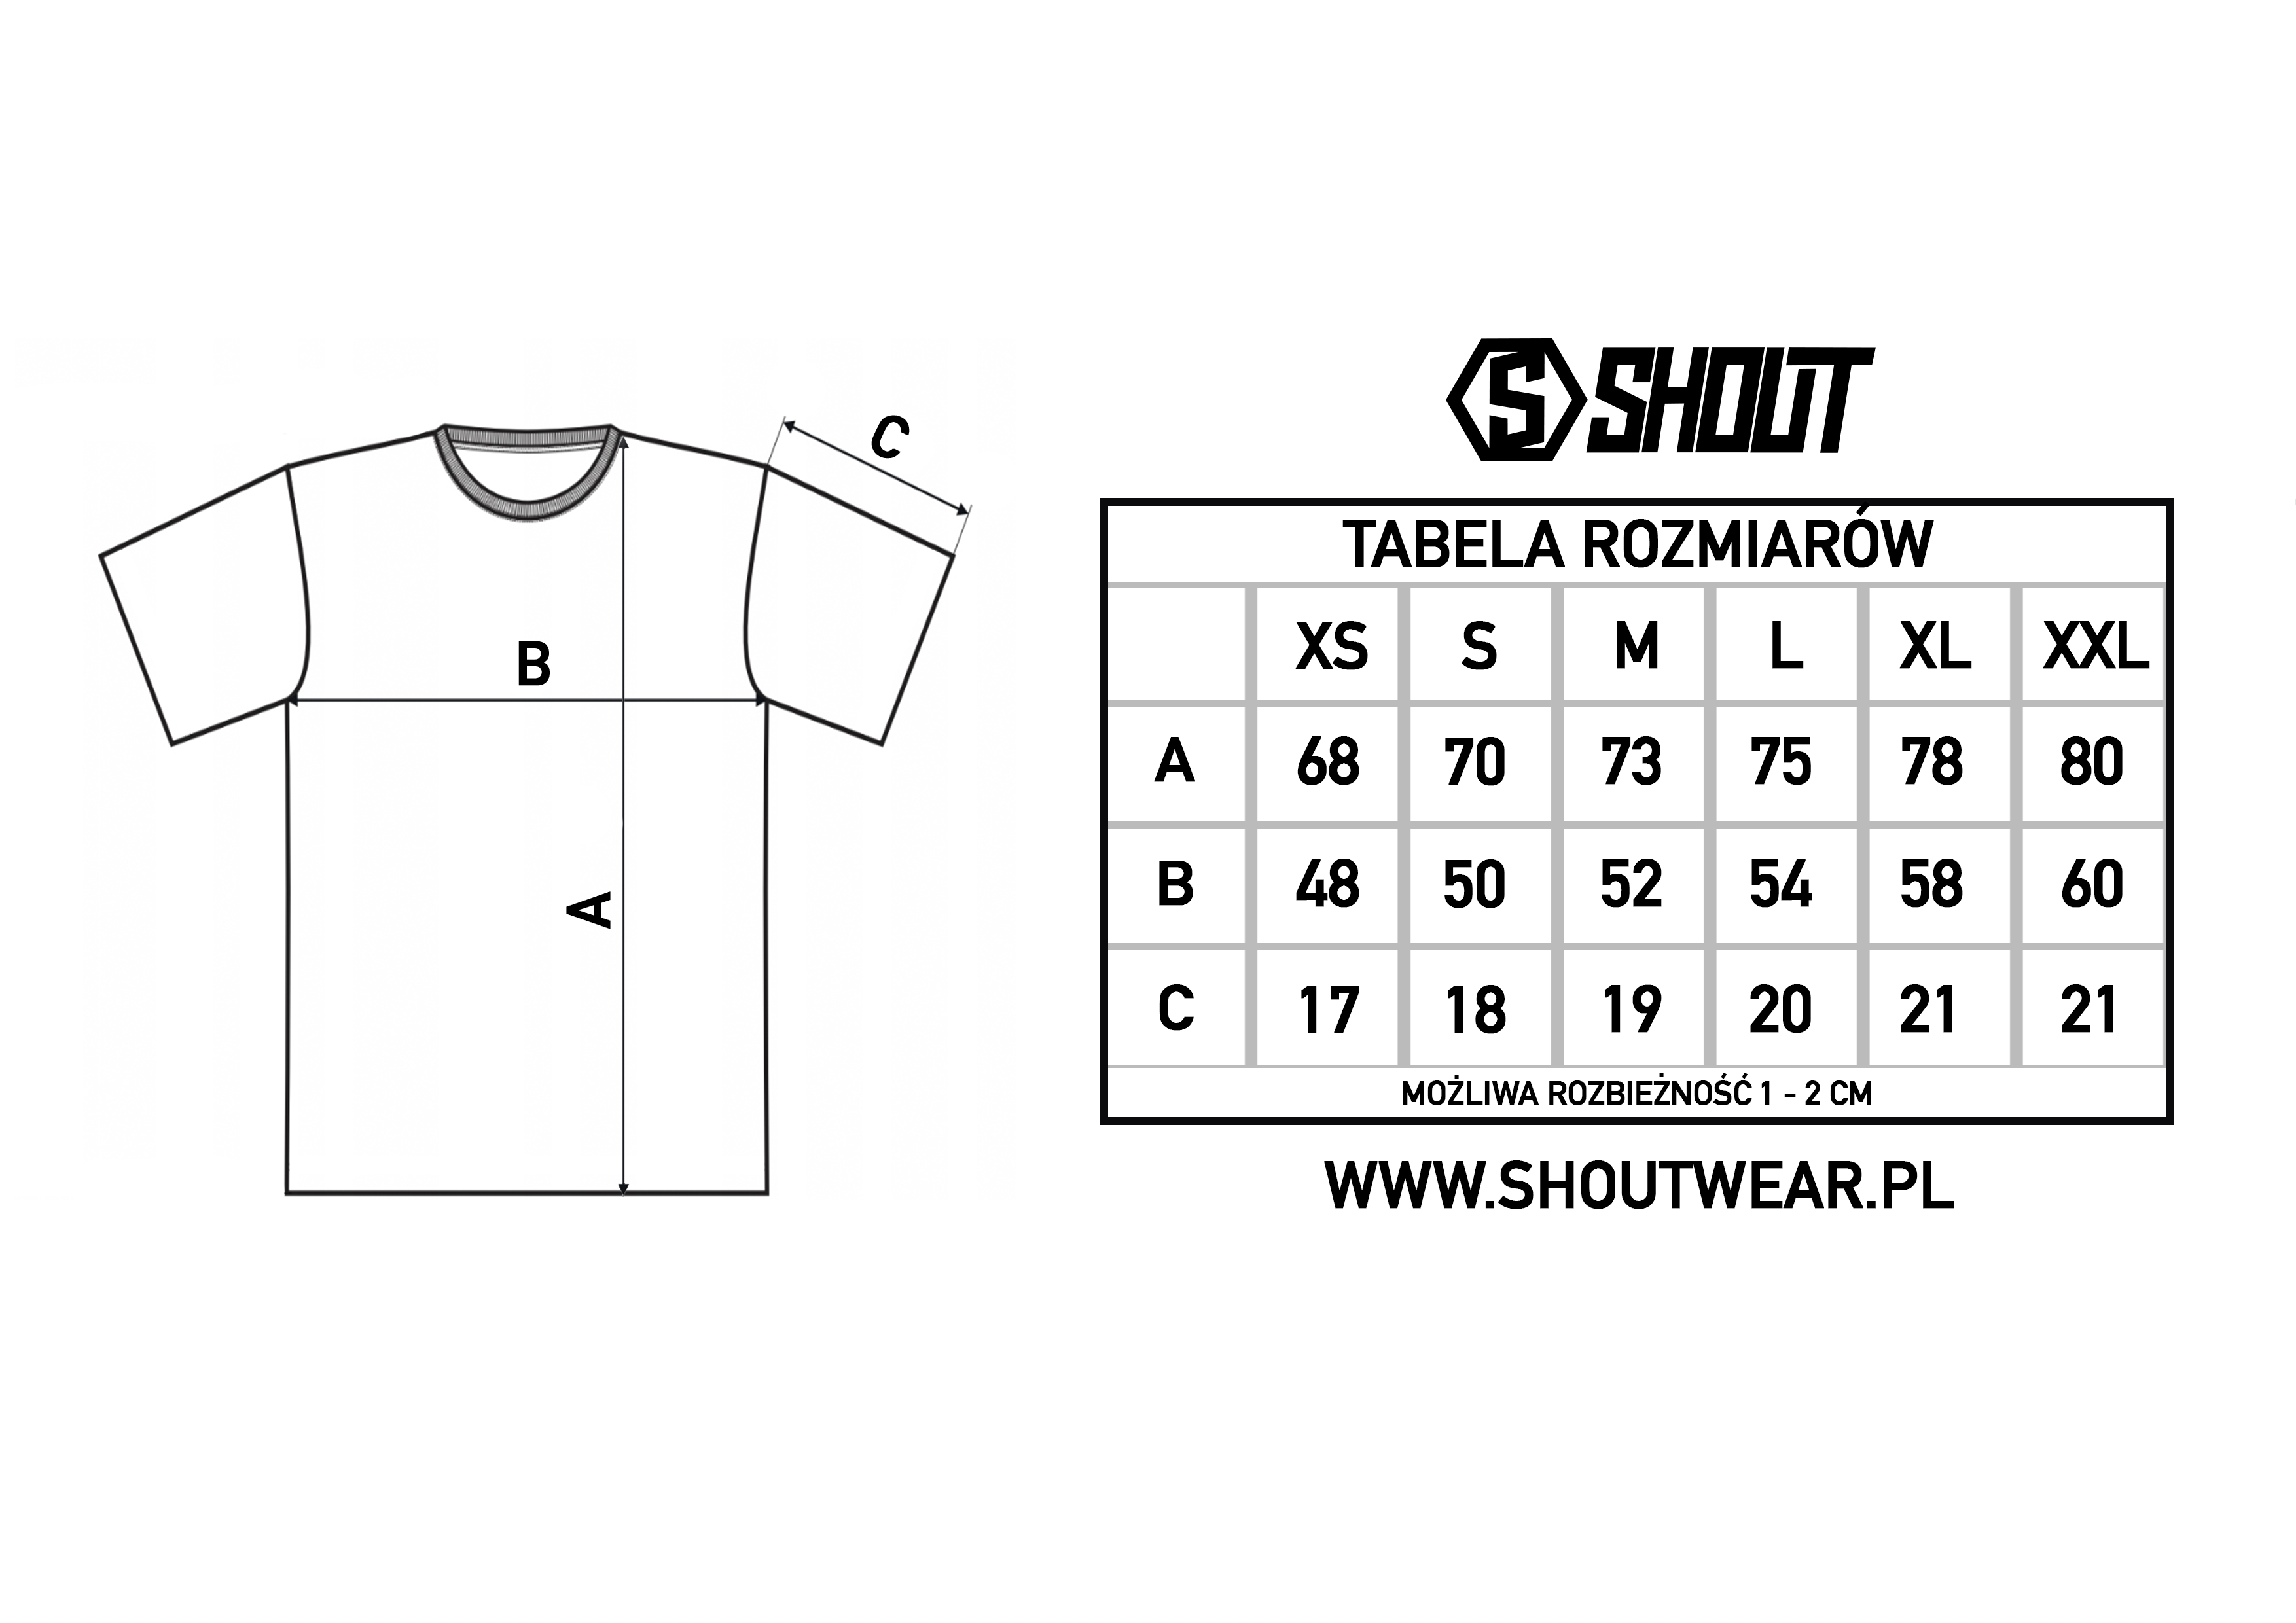 T shirt PECHOWA 13